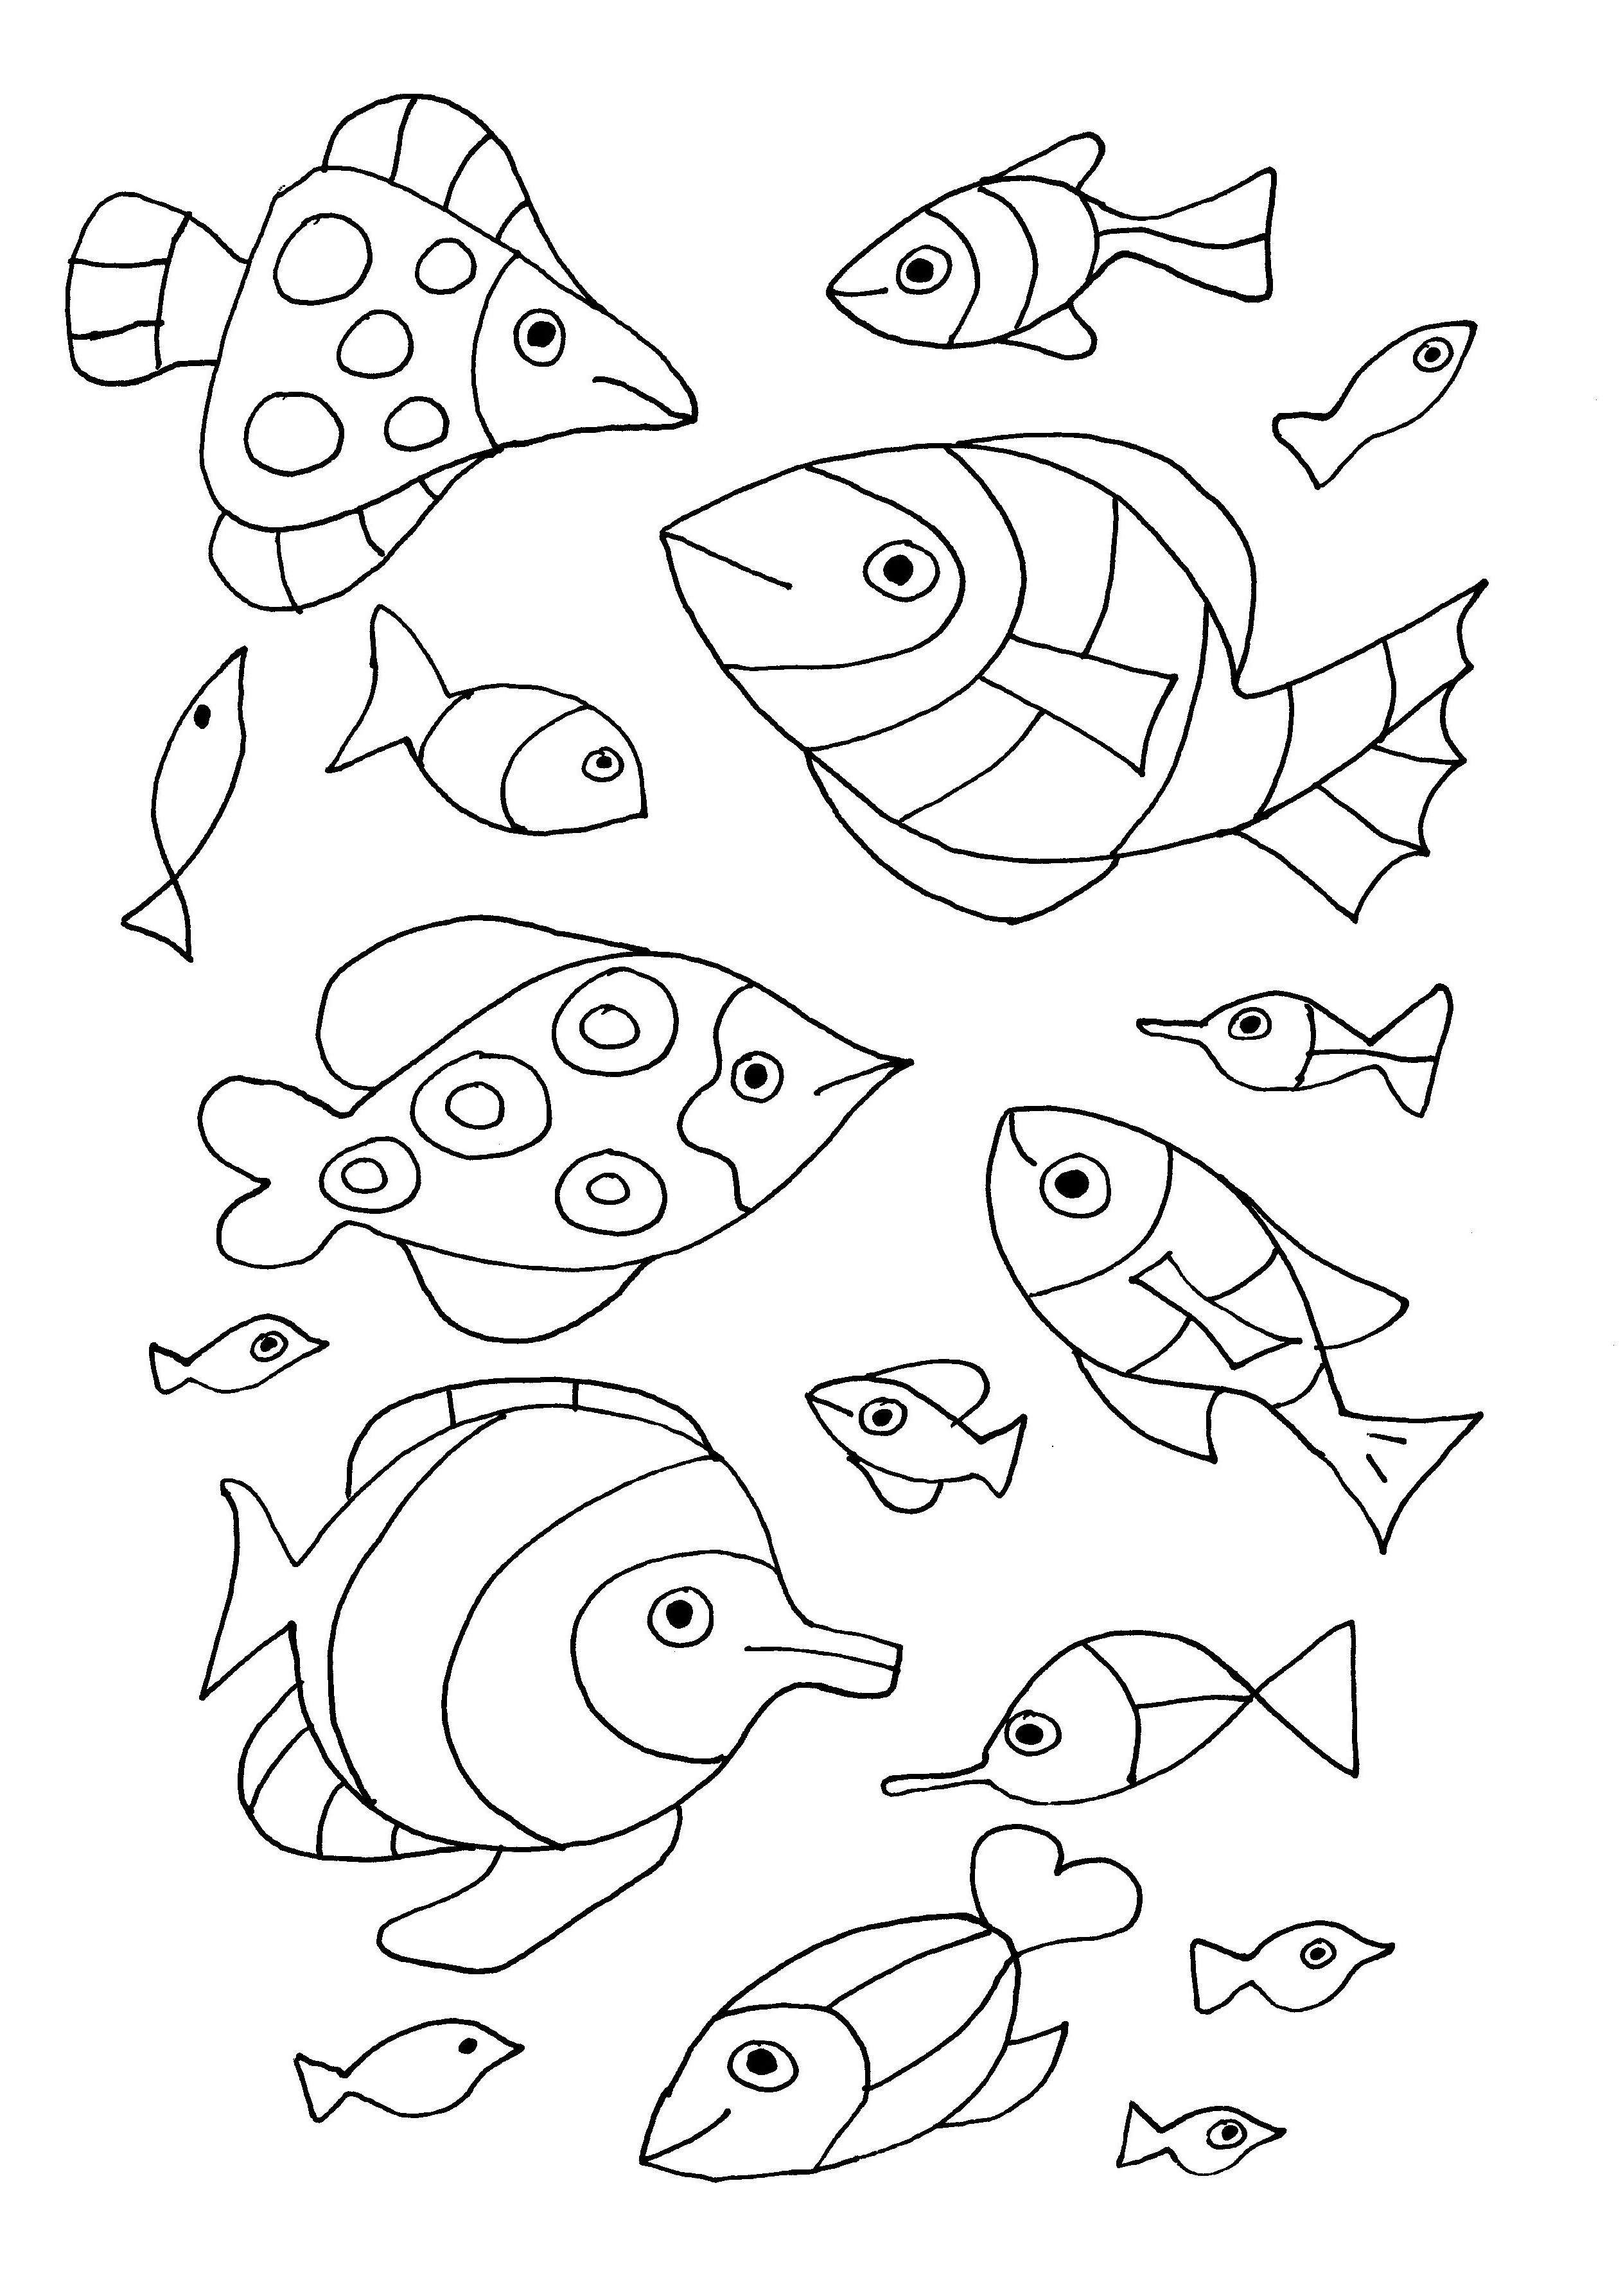 Several pretty fish to color